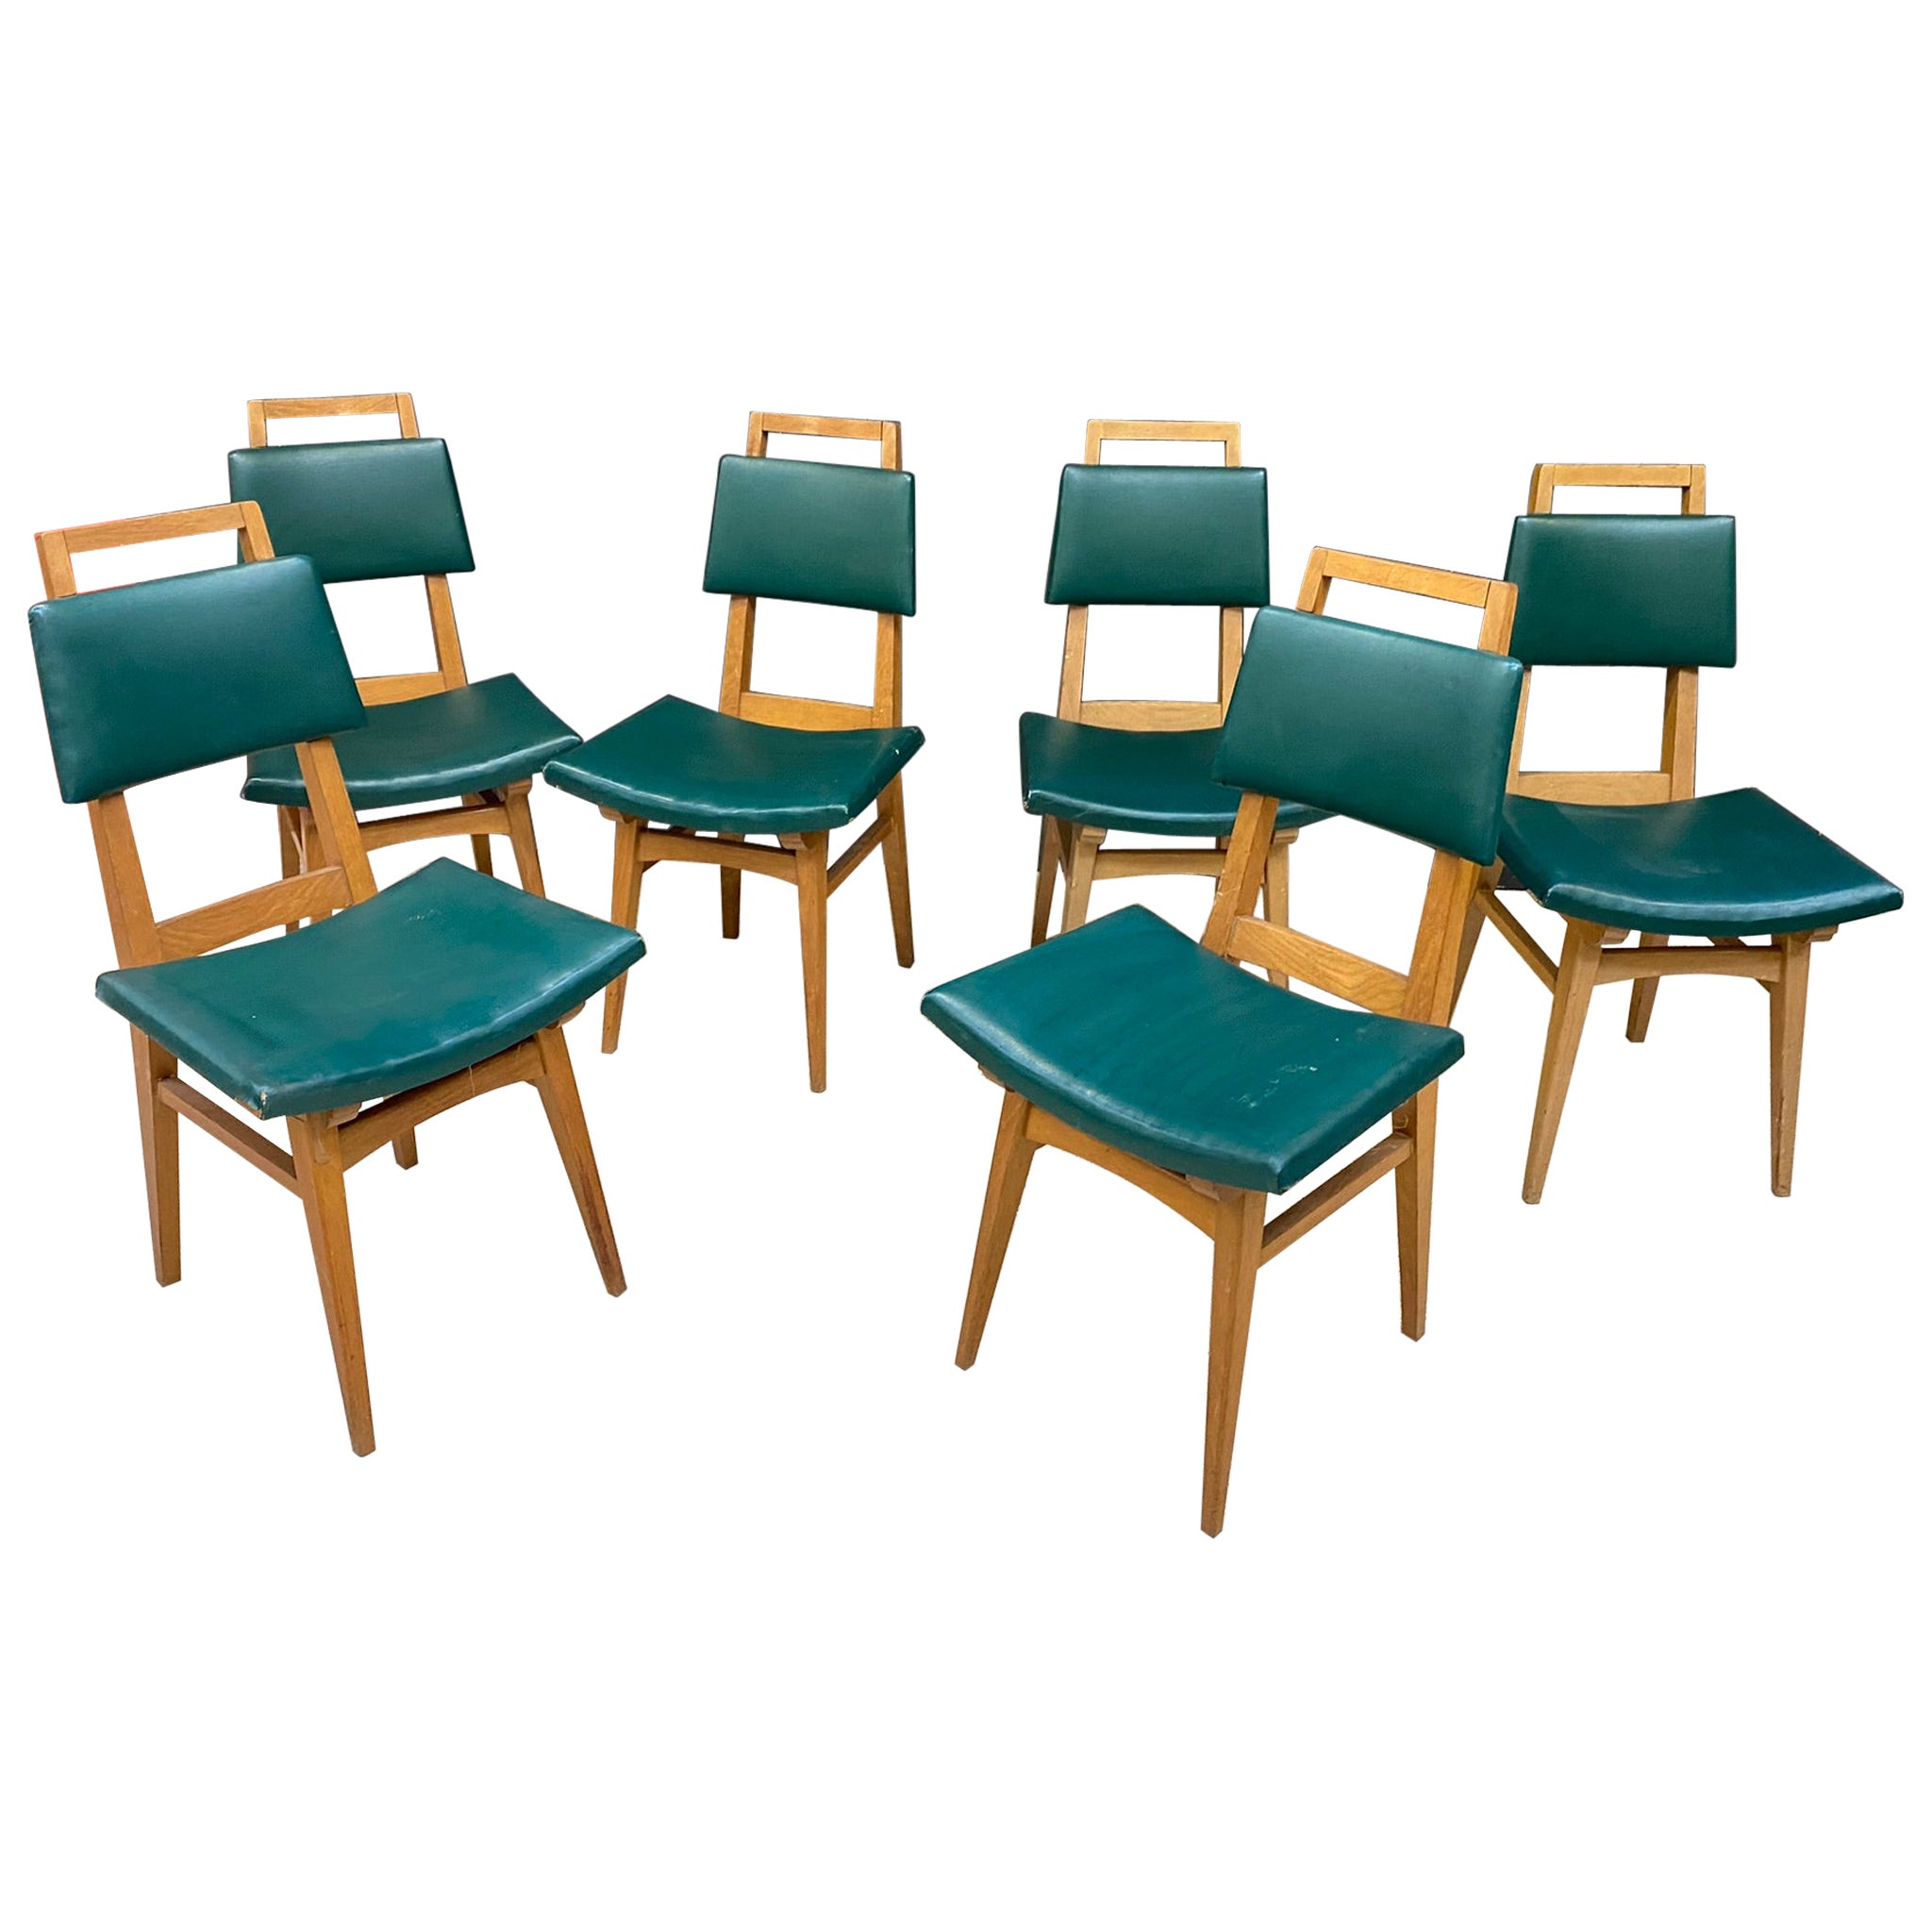 Suite de 6 chaises en chêne de style « Reconstruction », France, vers 1950/1960